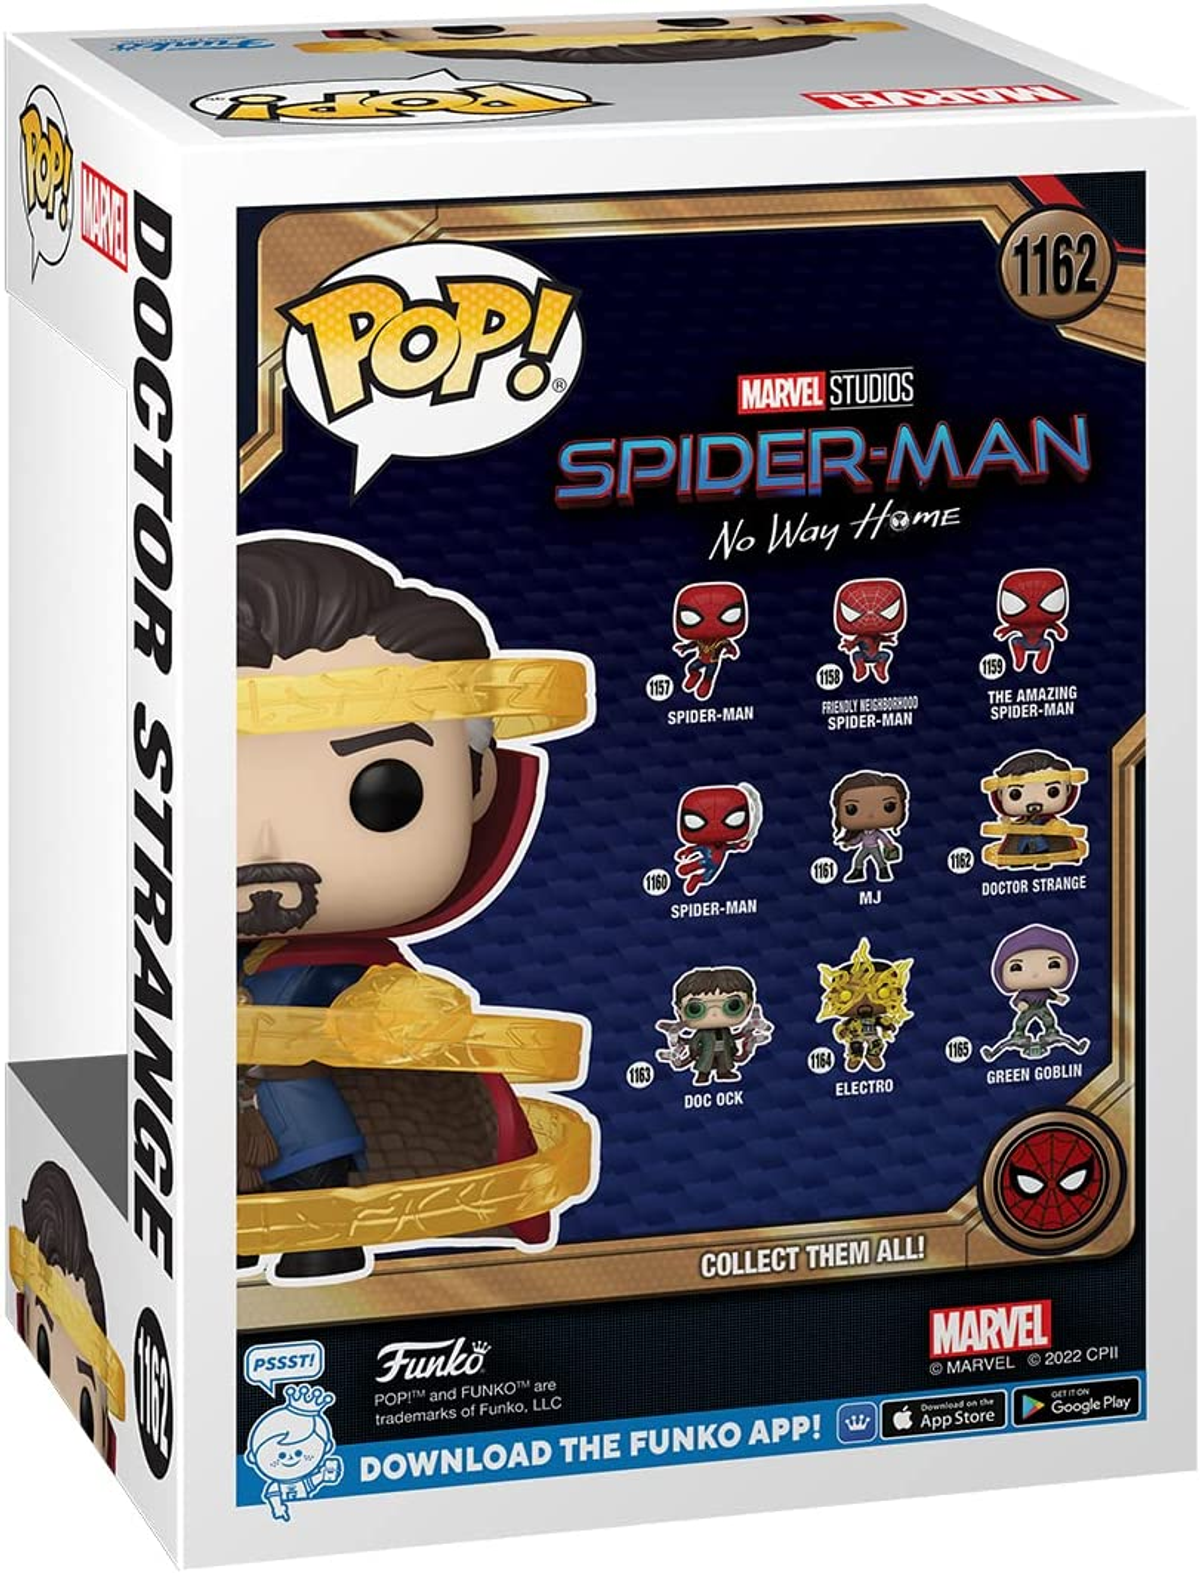 Spider-Man No Home POP - Way - Strange Doctor